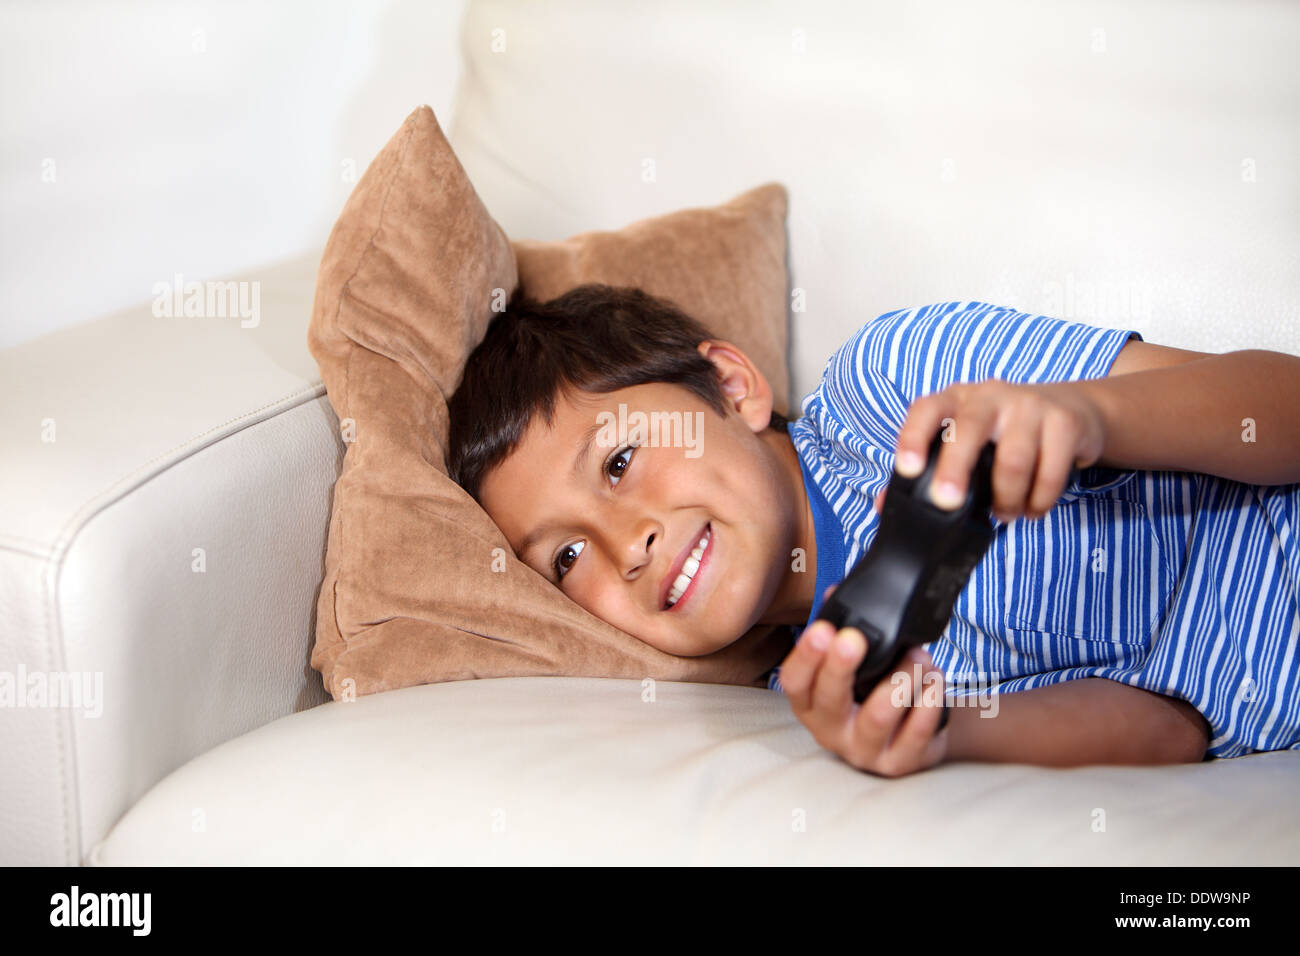 Jeune garçon à jouer à jeu en relxing sur le canapé Banque D'Images